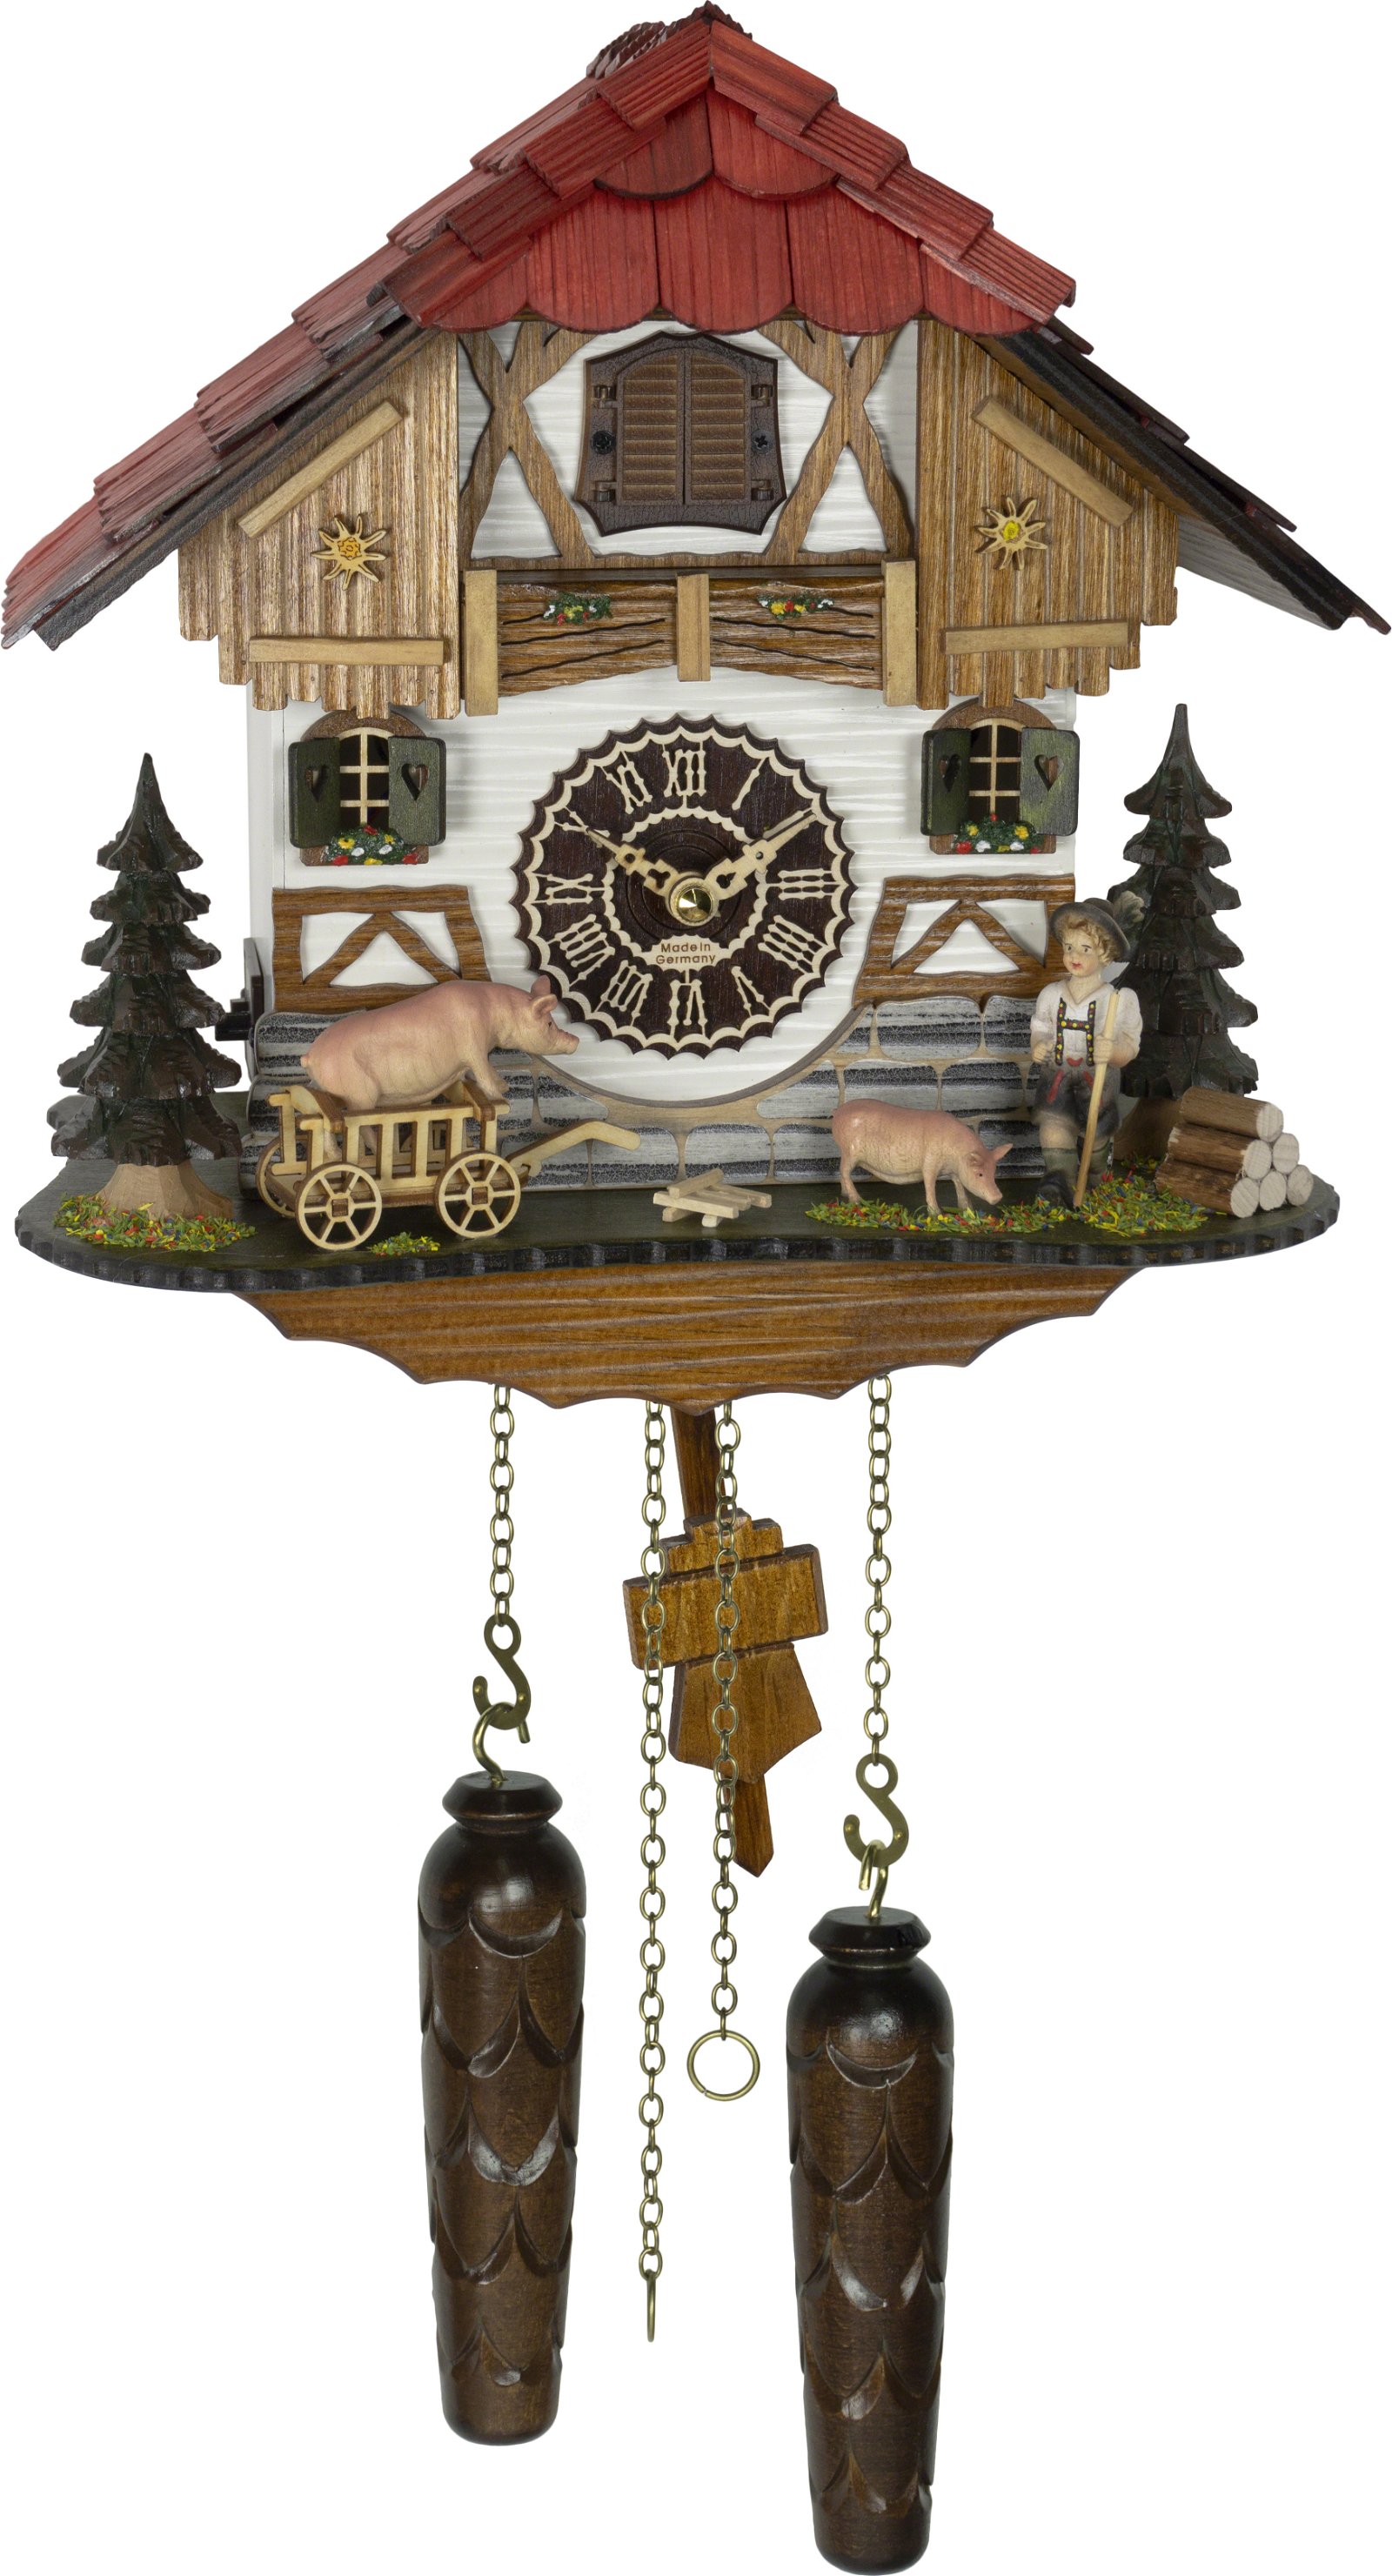 Kuckucksuhr Quarz-Uhrwerk Chalet-Stil 28cm von Trenkle Uhren